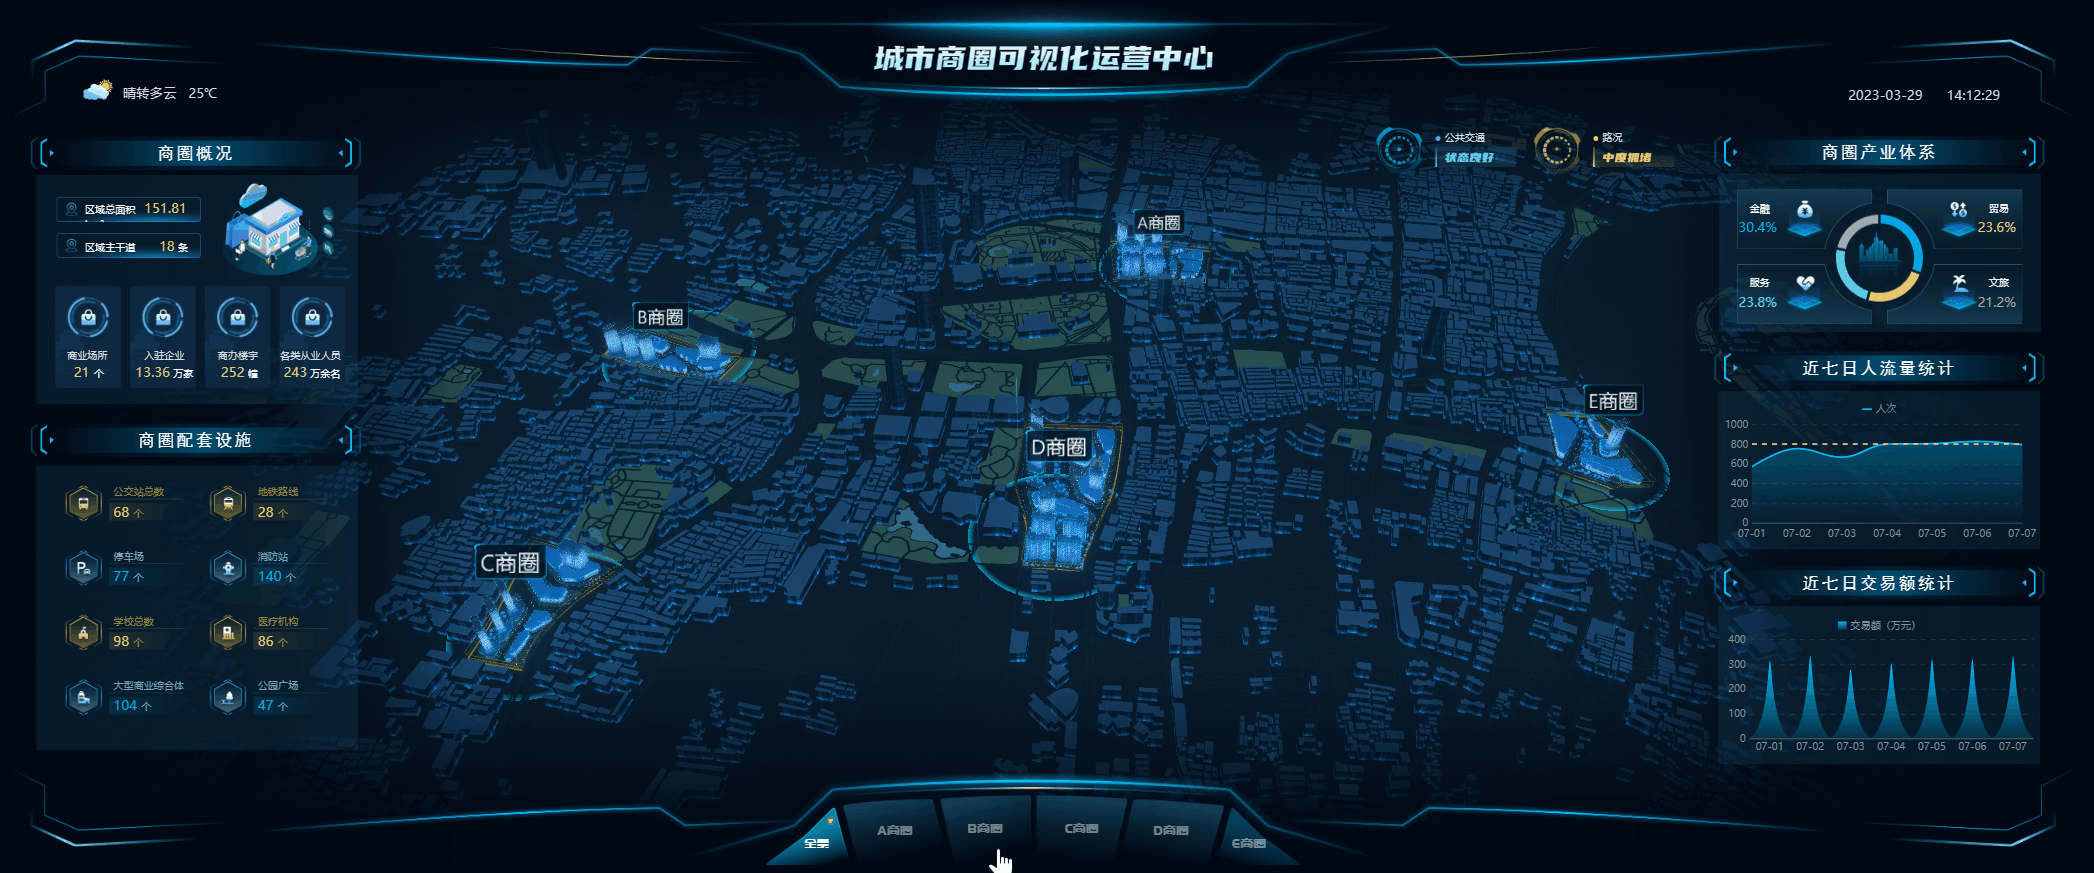 全景三维地图,在数据可视化大屏上展示,地图体验